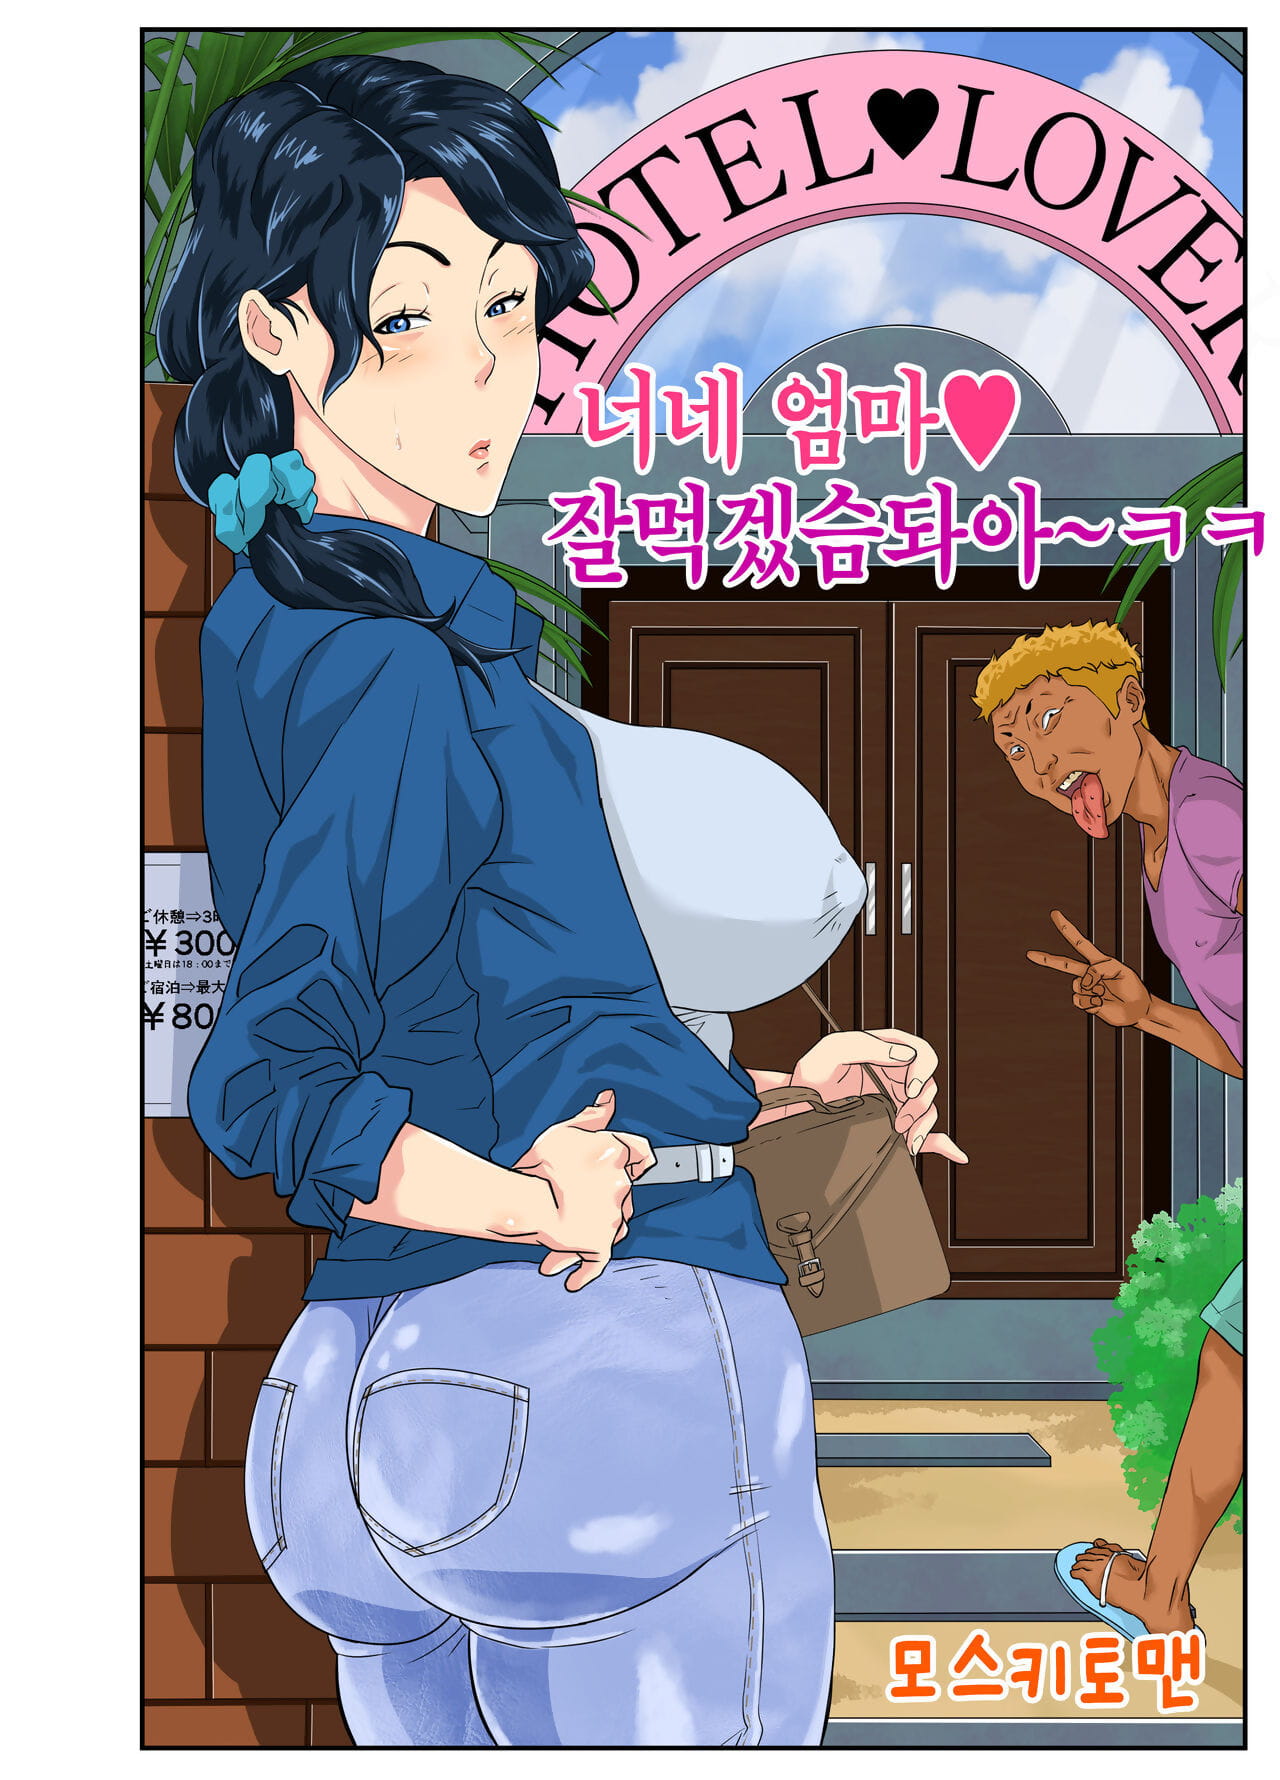 москитная Человек okaa Сан угощение 너네 엄마 잘먹겠슴돠아ㅋㅋ Корейский часть 4